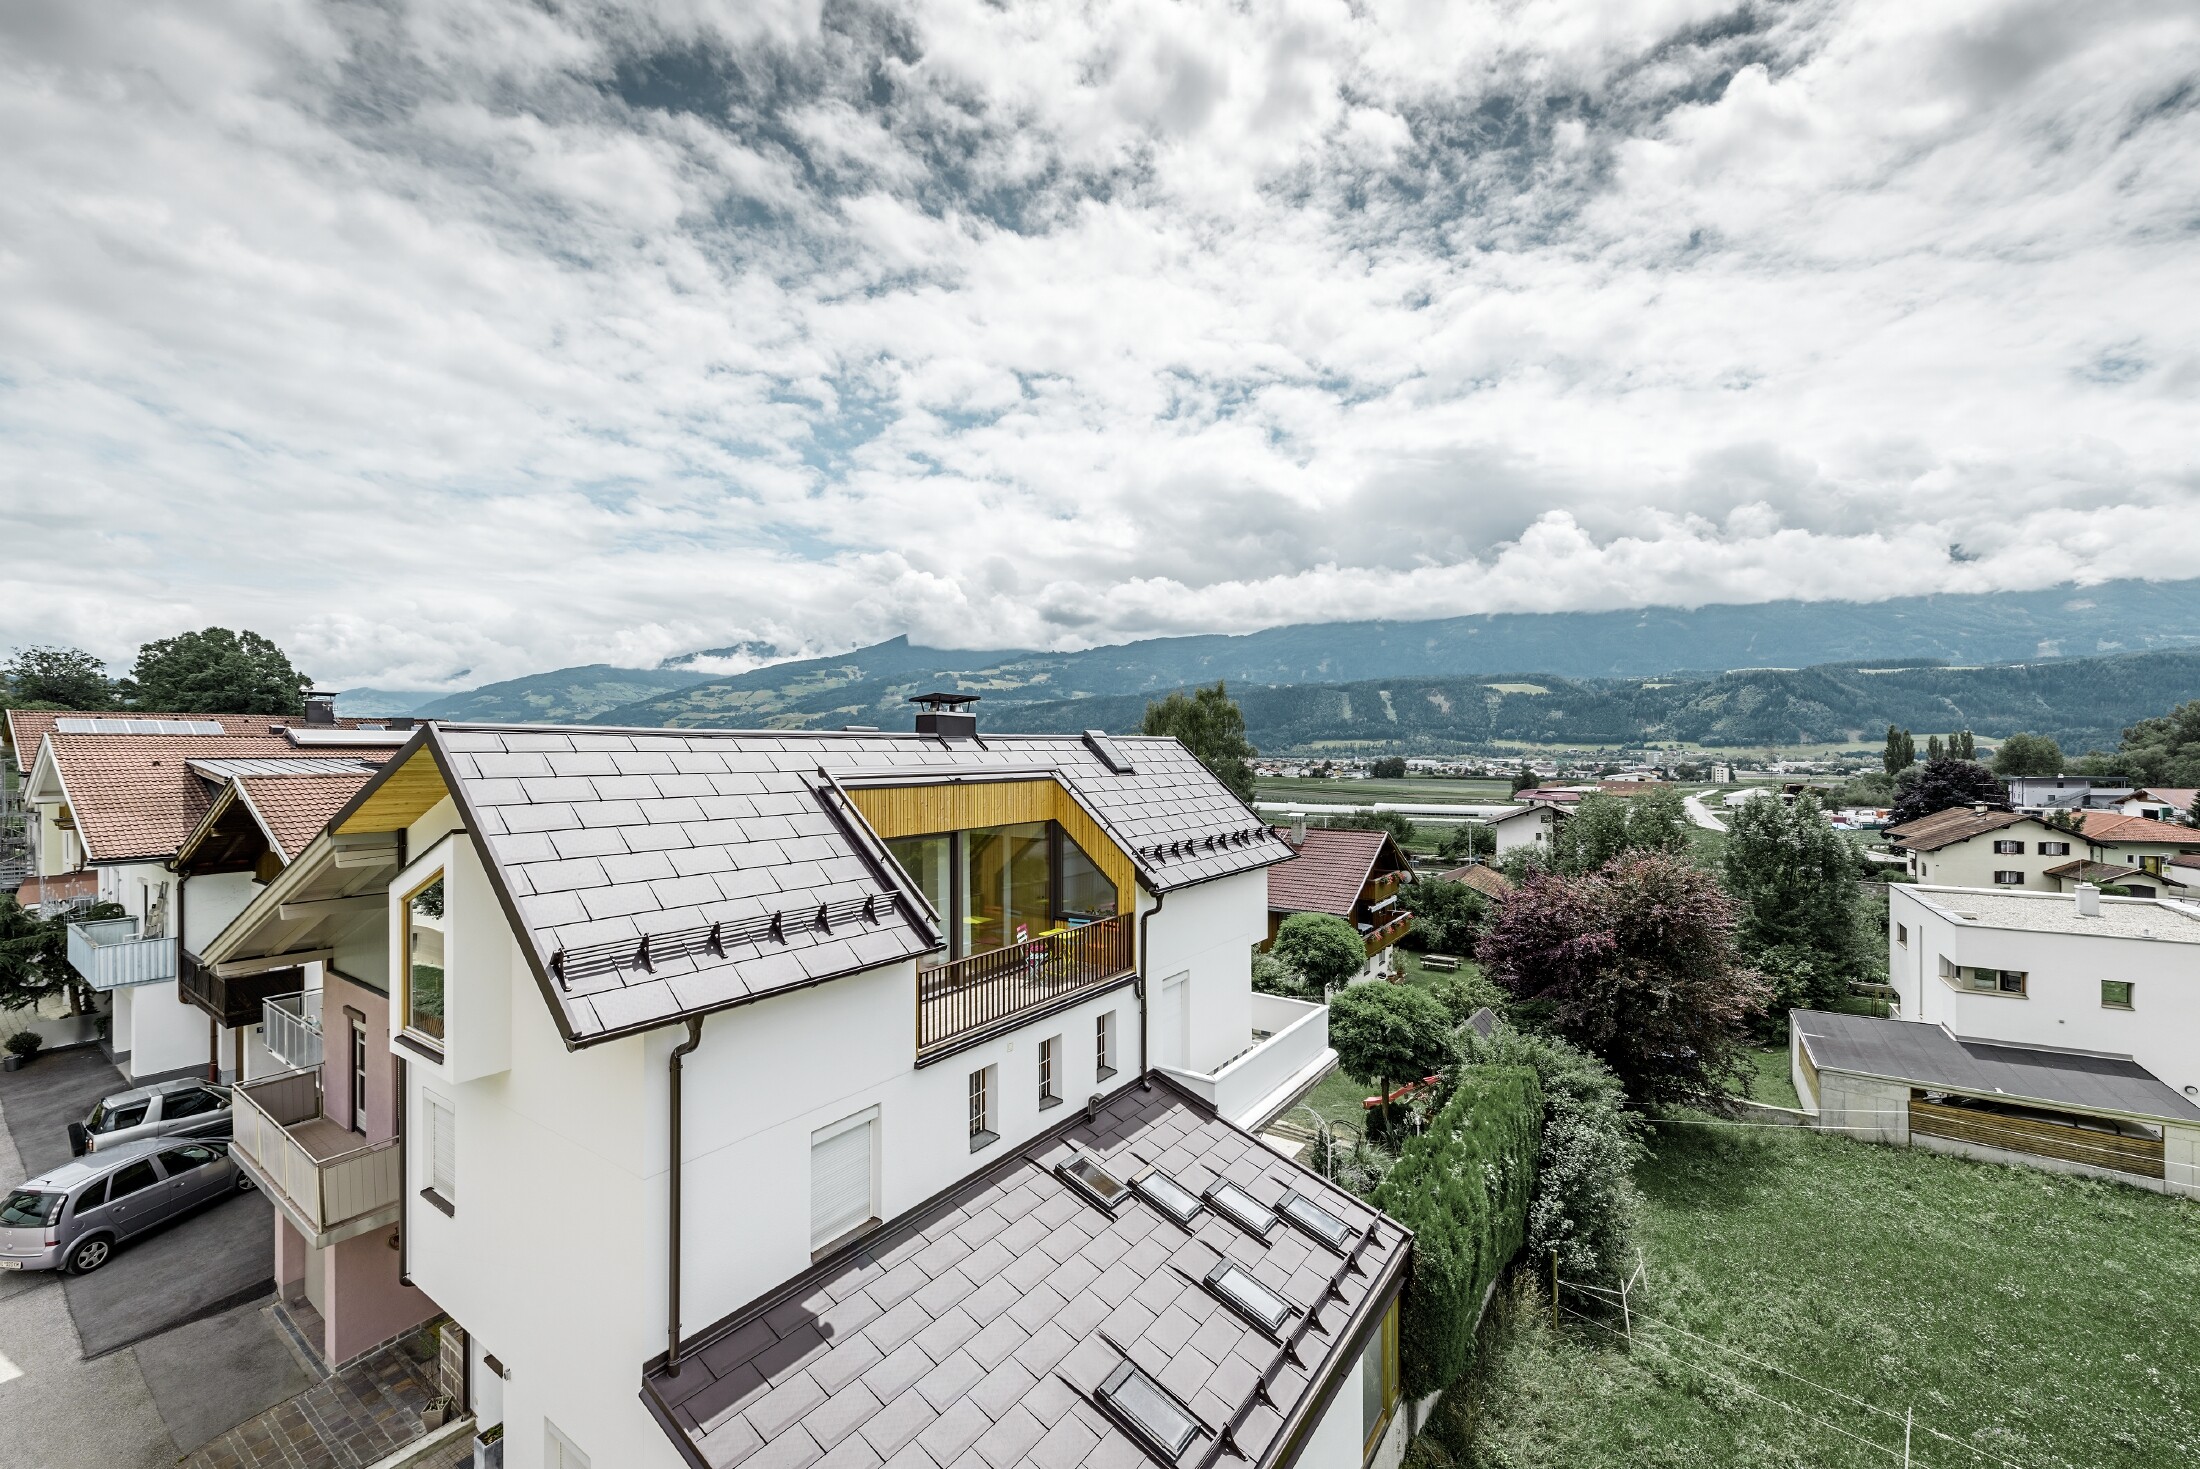 Das neue Wohnhaus in Thaur wurde mit der neuen Dachplatte R.16 von PREFA in Braun eingedeckt.